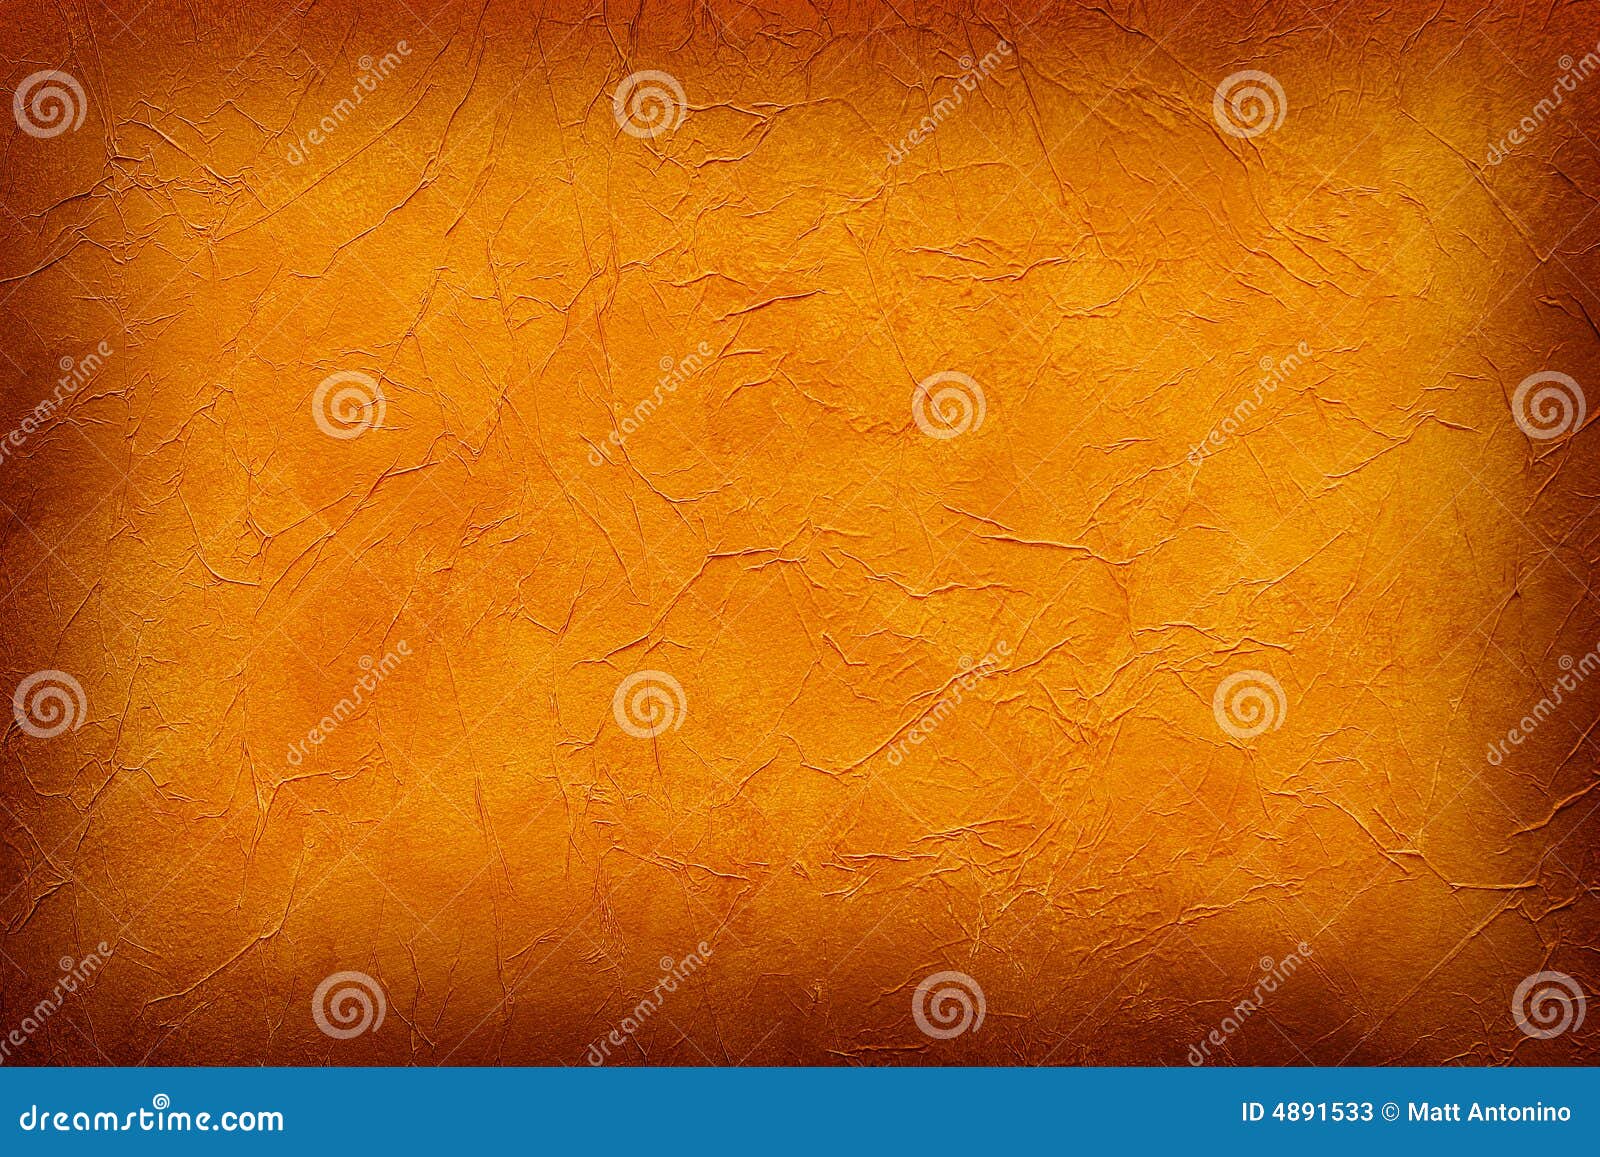 Ảnh chụp nền màu cam là một thứ bạn cần để cập nhật hình ảnh cho blog, trang web của bạn. Với nhiều độ tươi sáng, những bức ảnh này sẽ tạo nên một không gian làm việc và thư giãn tốt nhất. Hãy khám phá ngay những ảnh chụp nền màu cam đẹp để thể hiện ý tưởng của bạn.